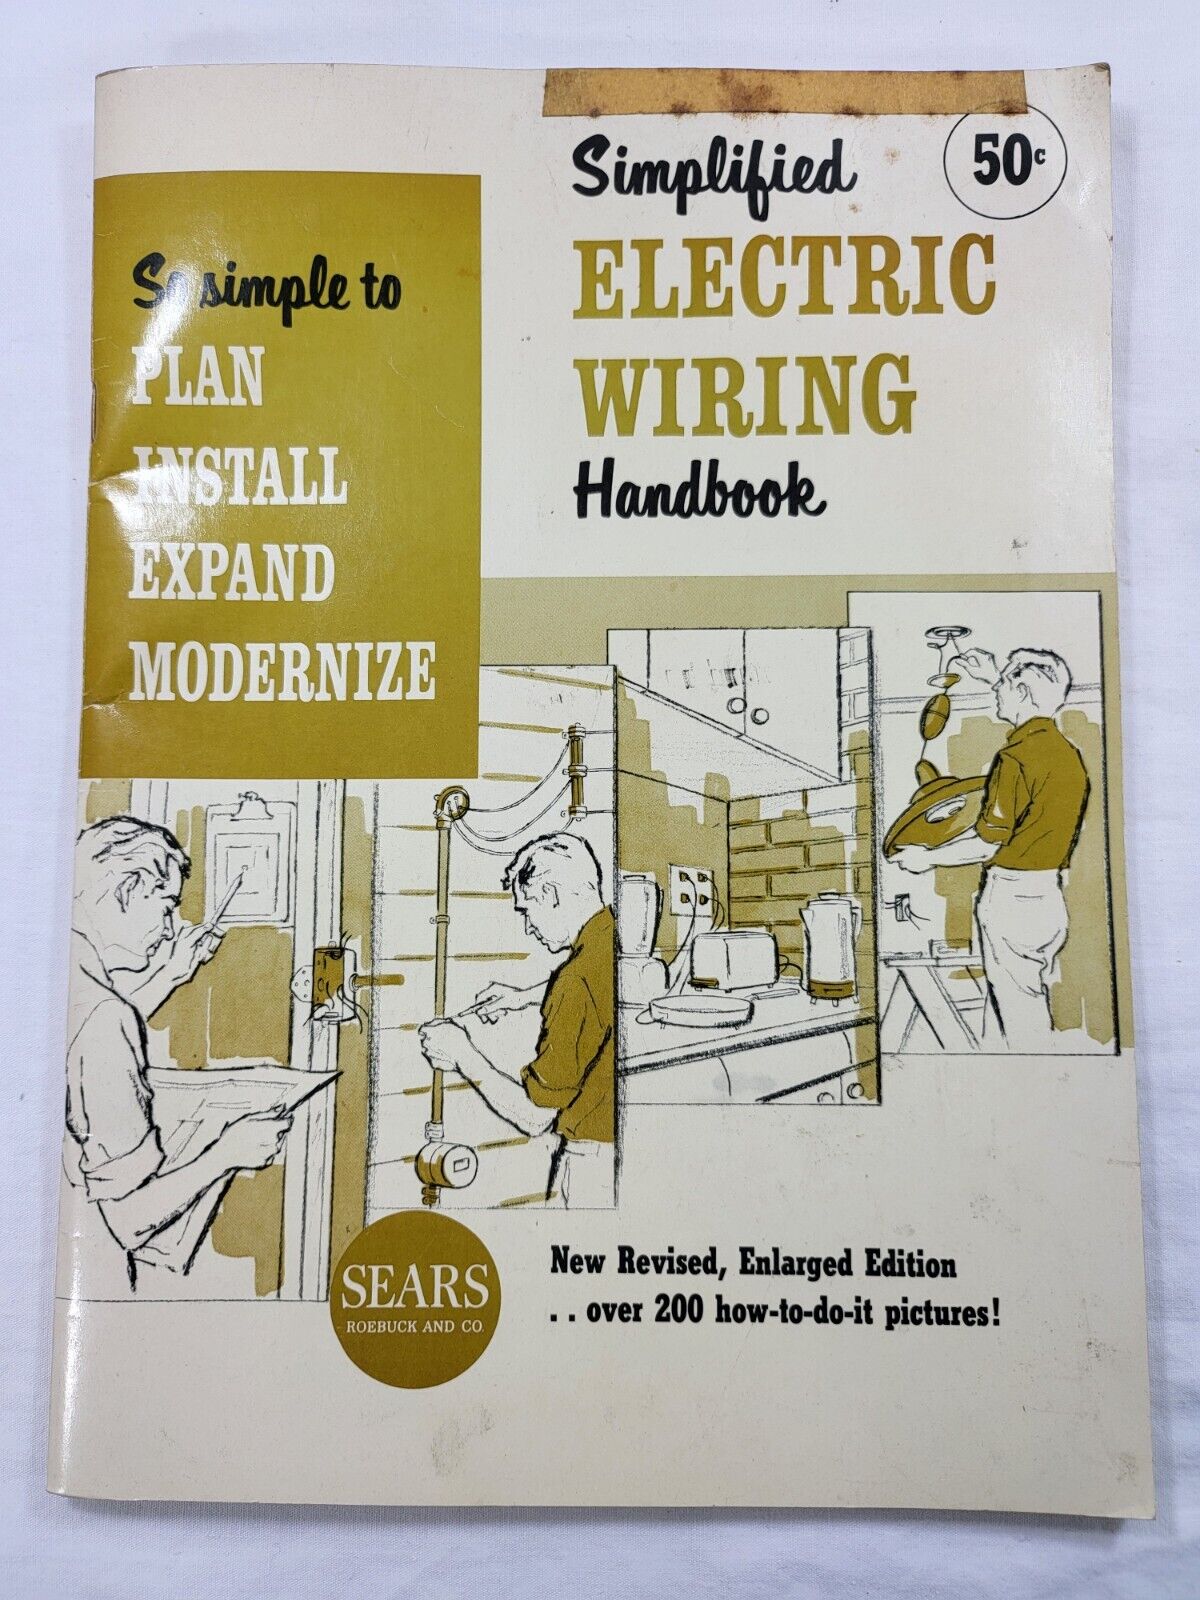 1965 Sears Roebuck Simplified Electric Wiring Handbook